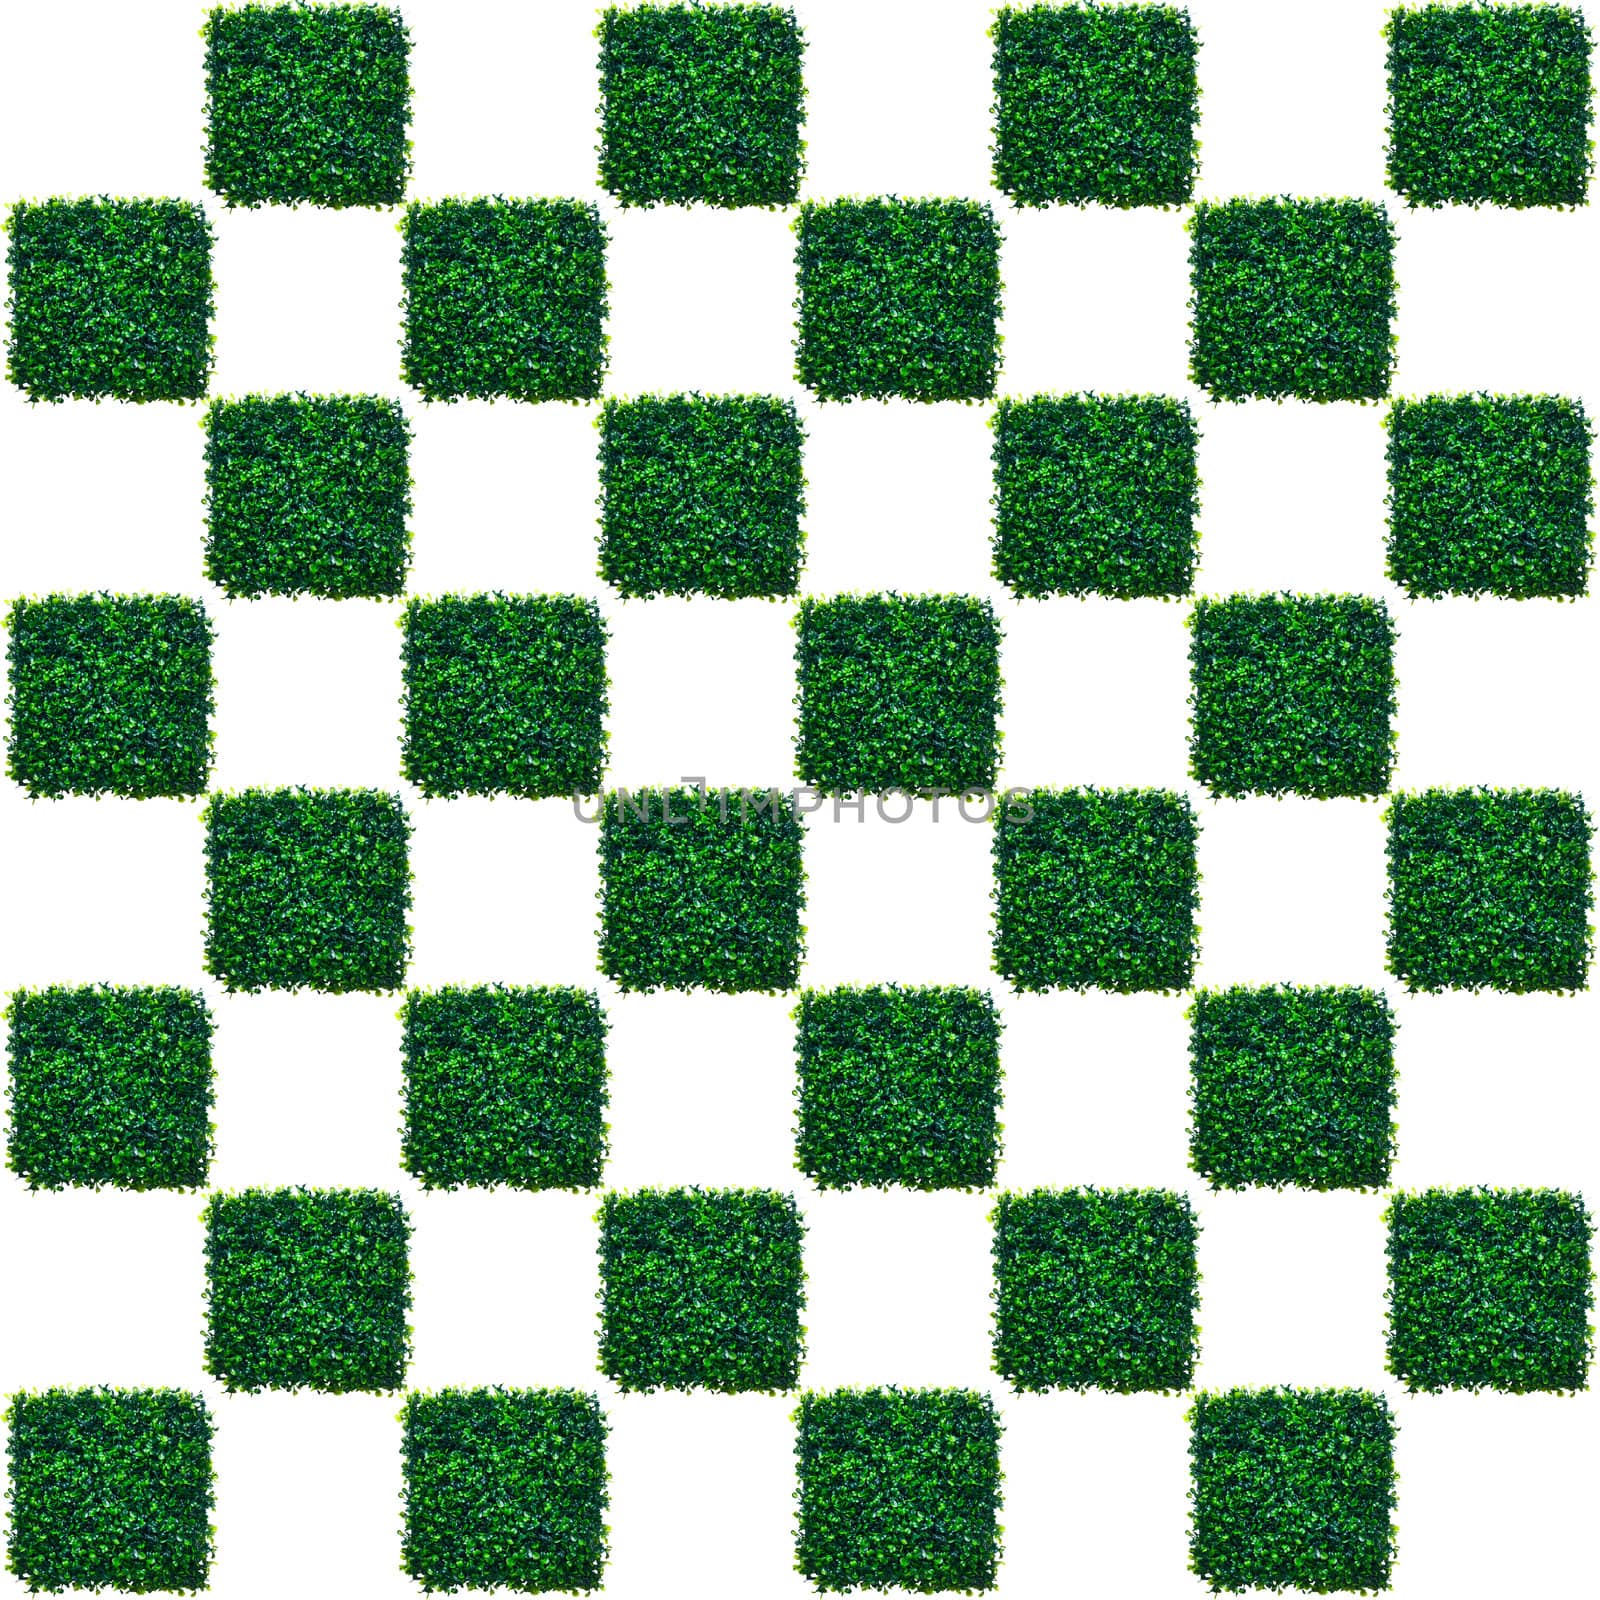 Artificial Grass Chess board texture